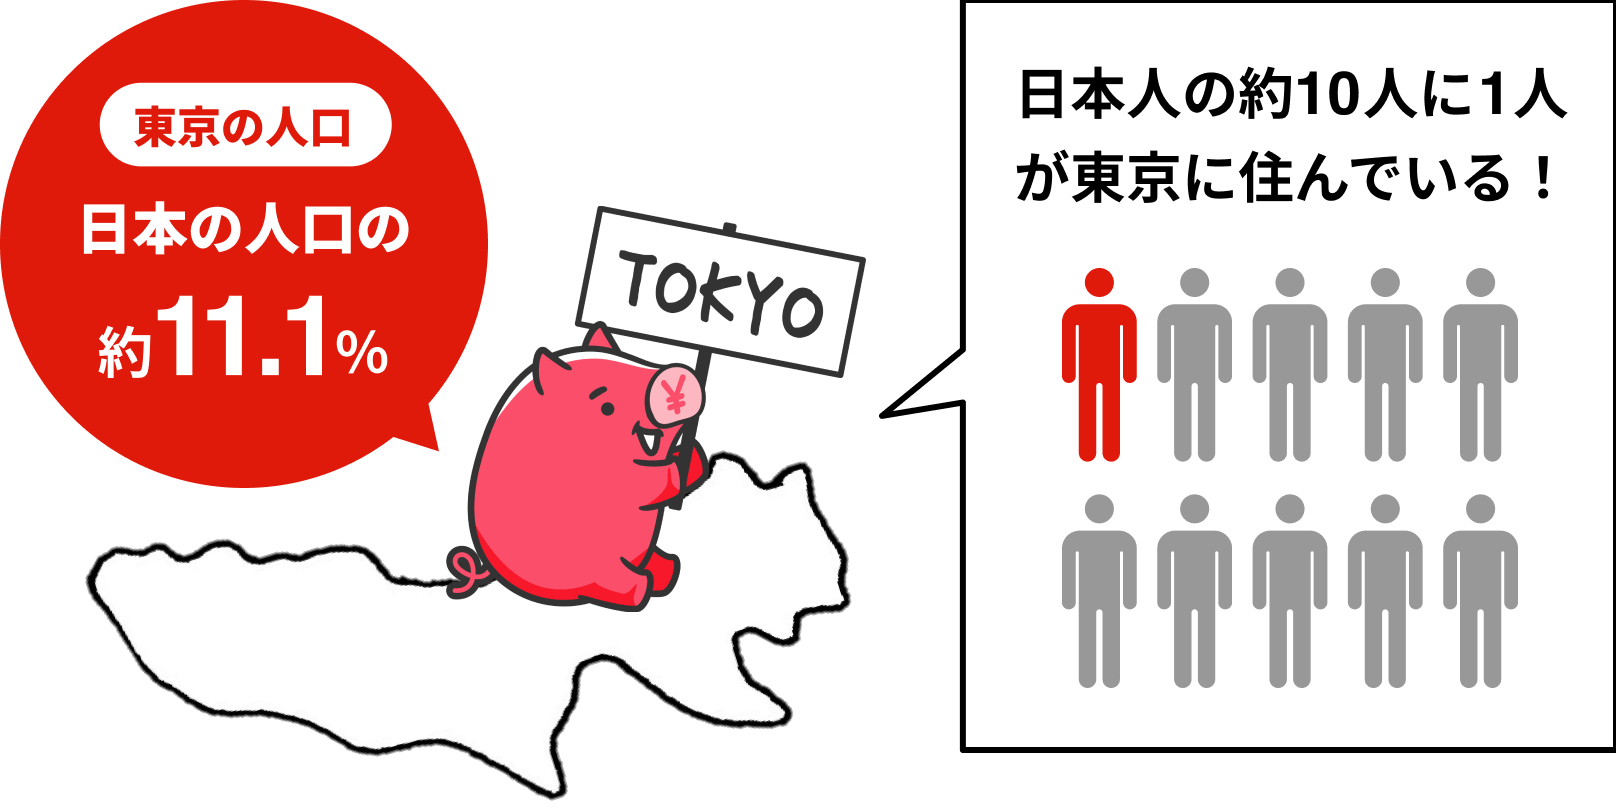 東京の人口 日本の人口の約11.1%　日本人の約10人に1人が東京に住んでいる！